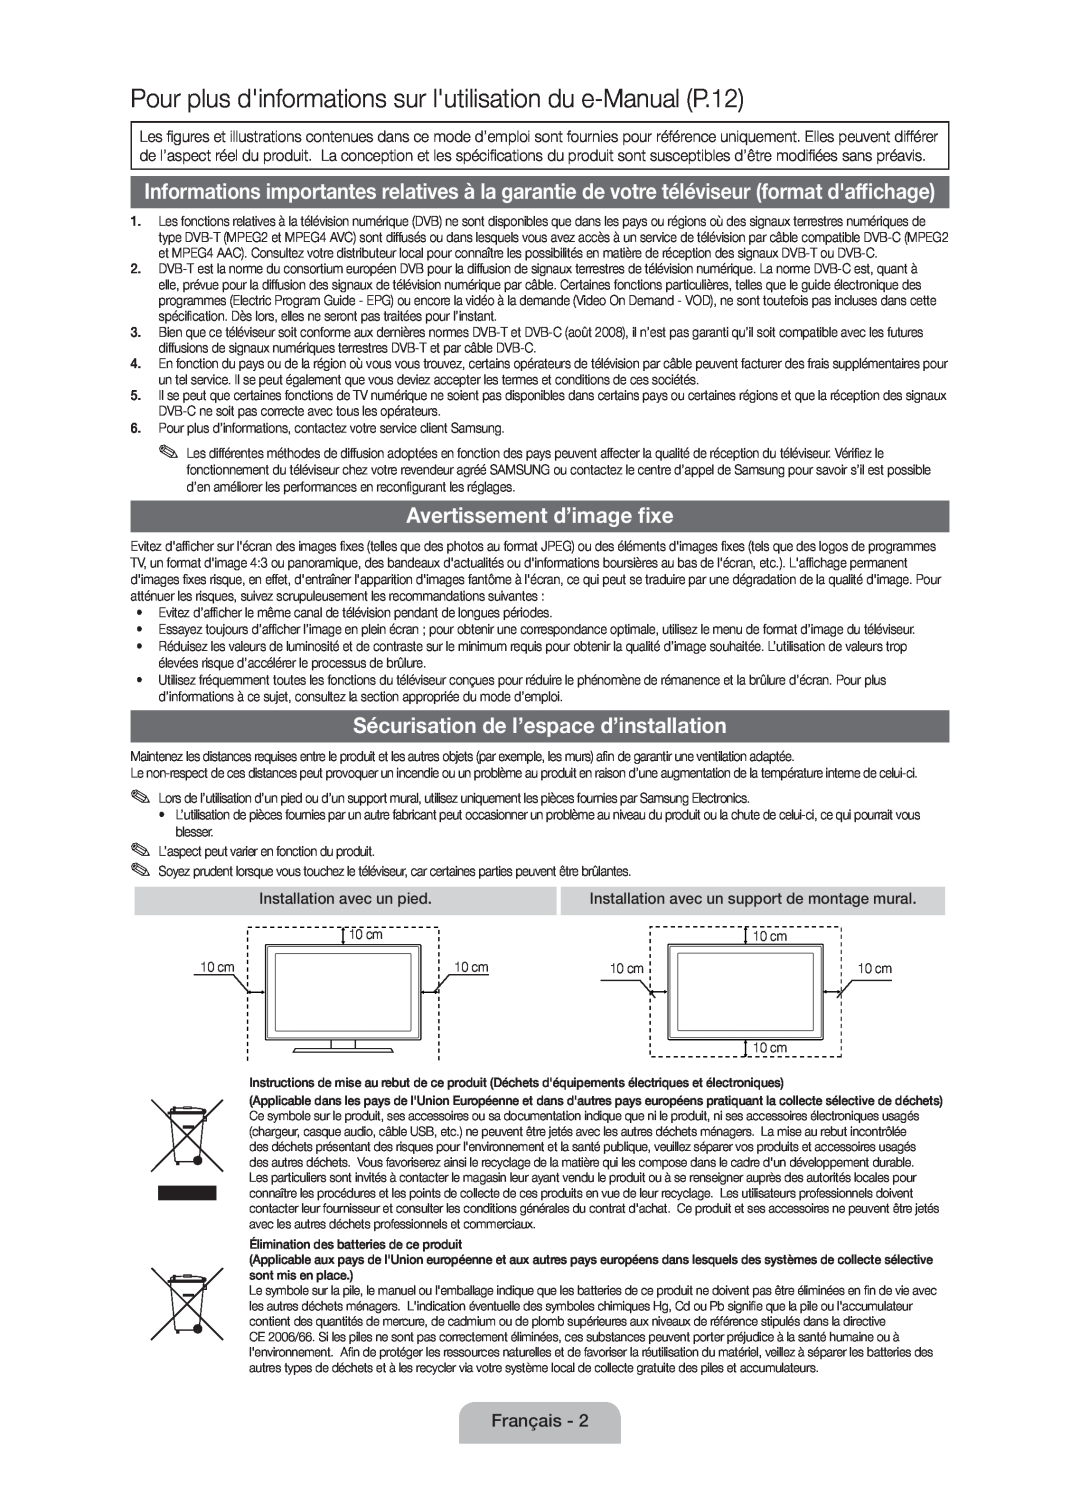 Samsung UE32D4000NWXTK manual Pour plus dinformations sur lutilisation du e-Manual P.12, Avertissement d’image fixe 